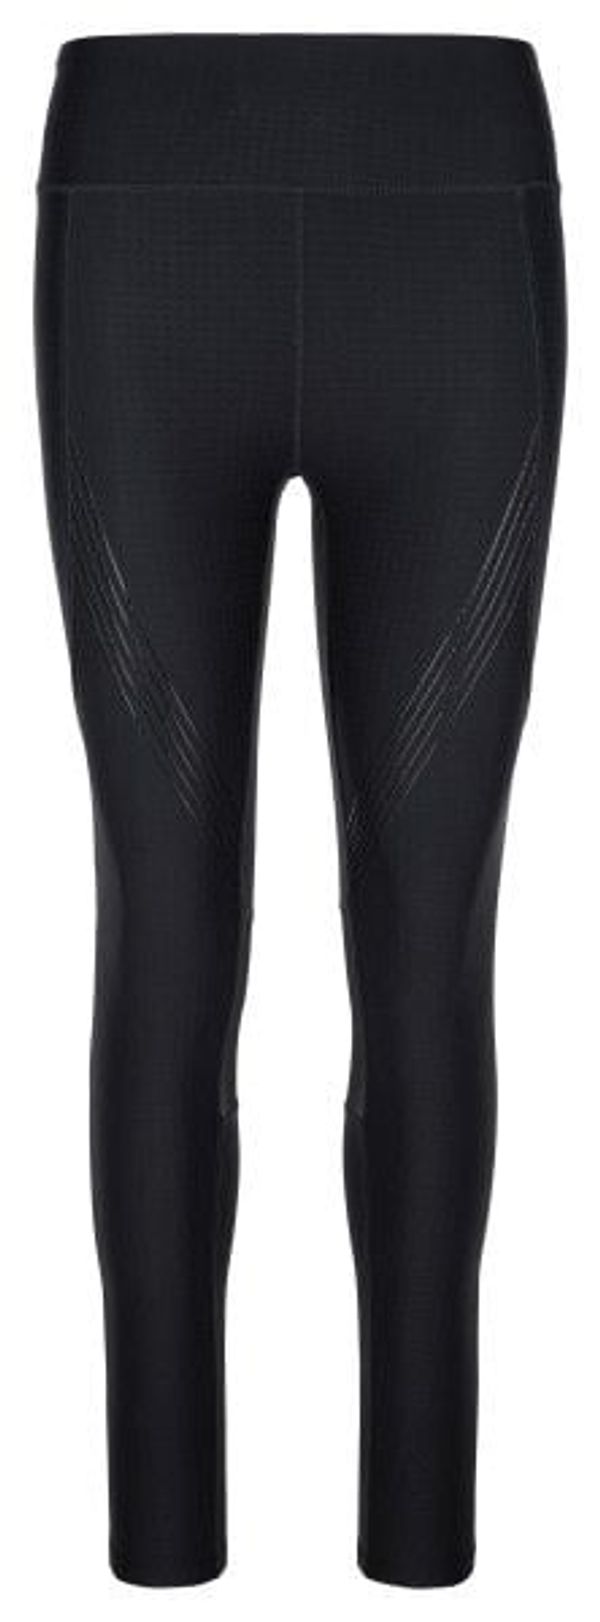 Kilpi Women's running leggings KILPI GEARS-W black